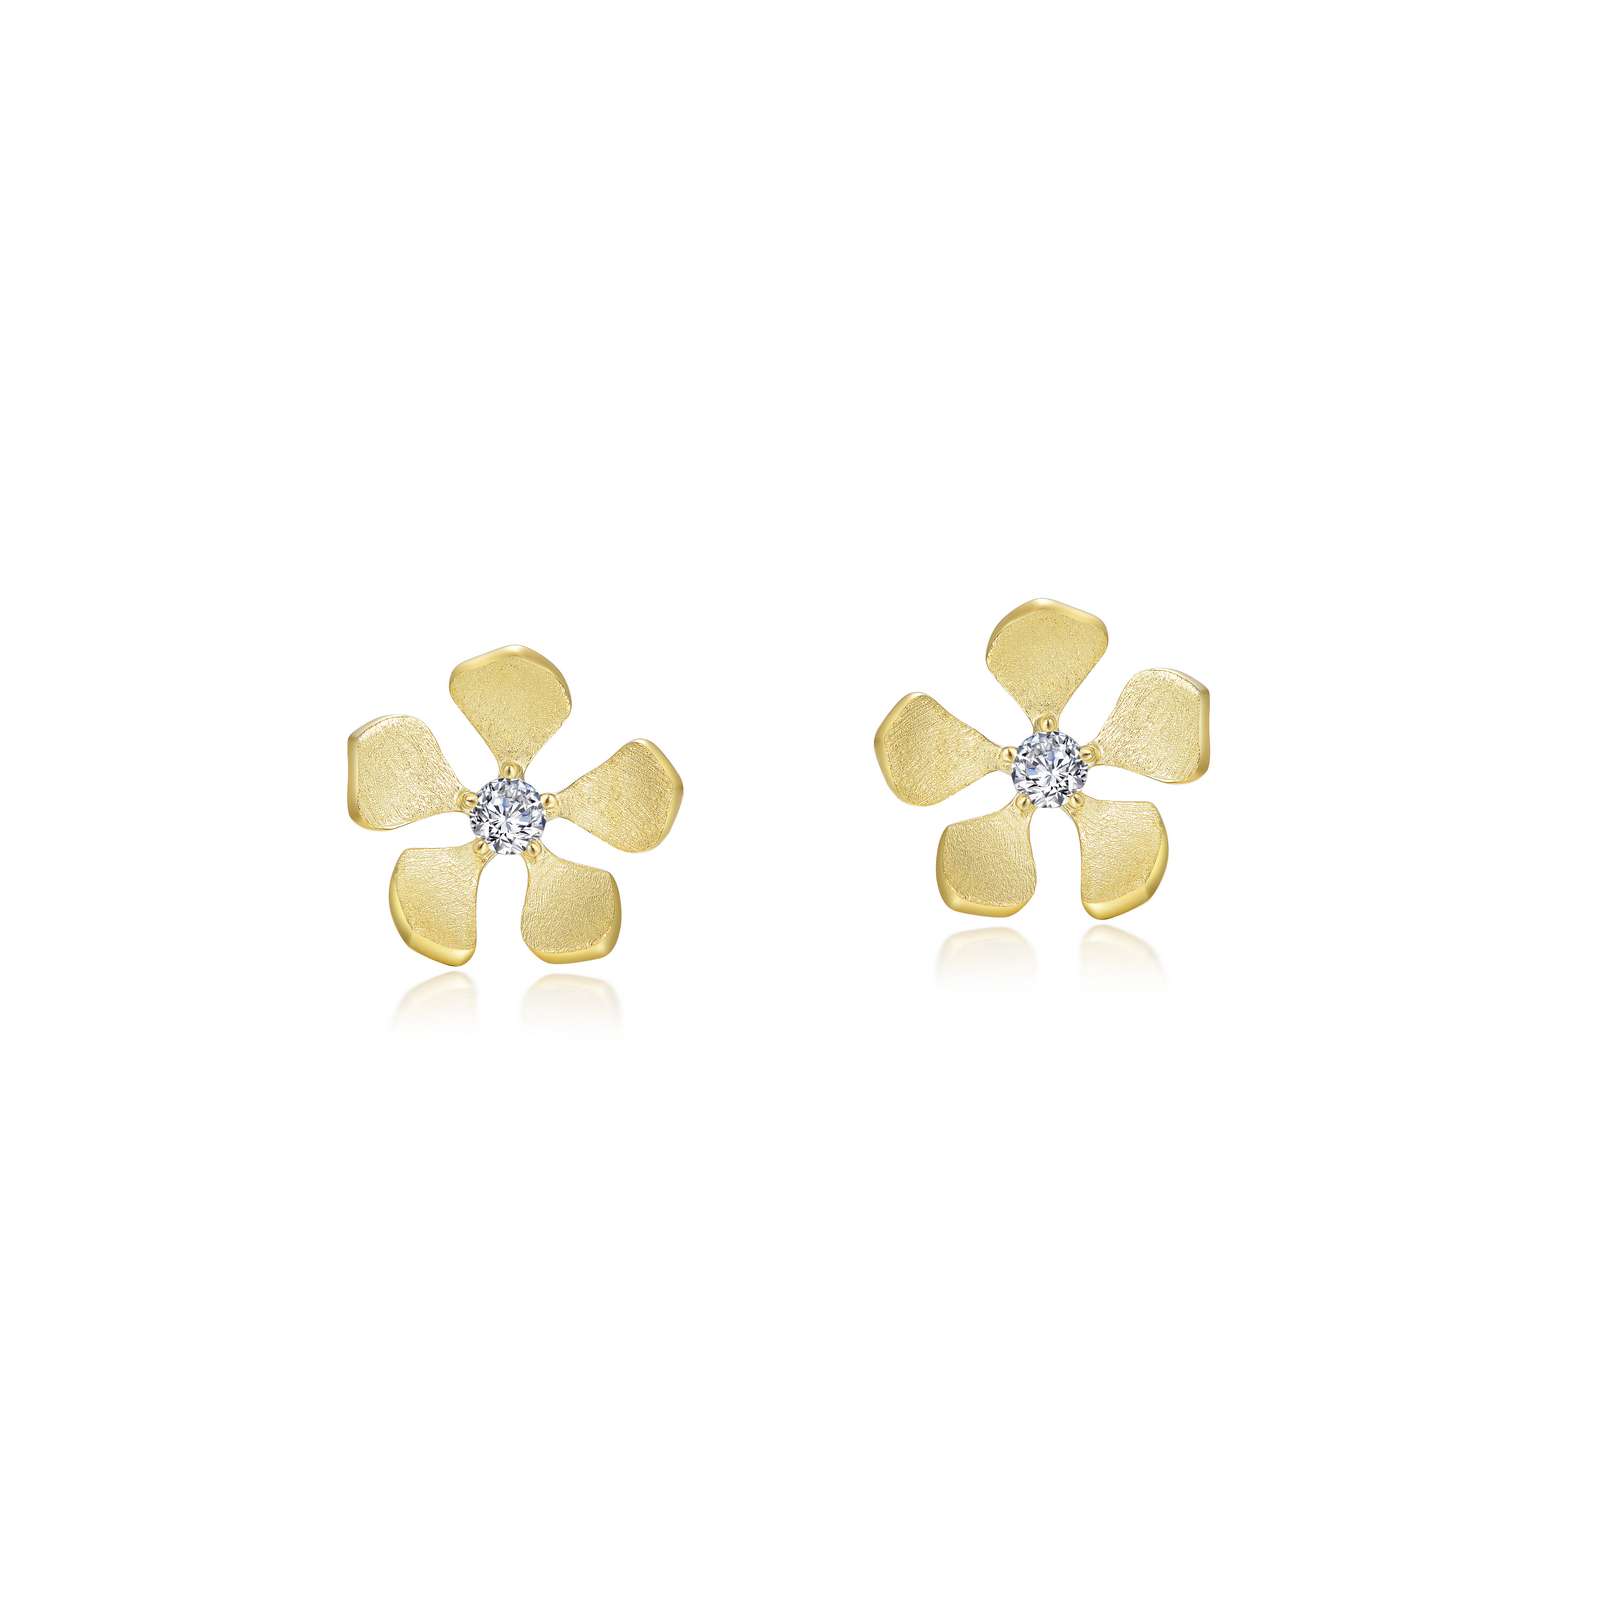 Lafonn Flower Stud Earrings: Precious Accents, Ltd.